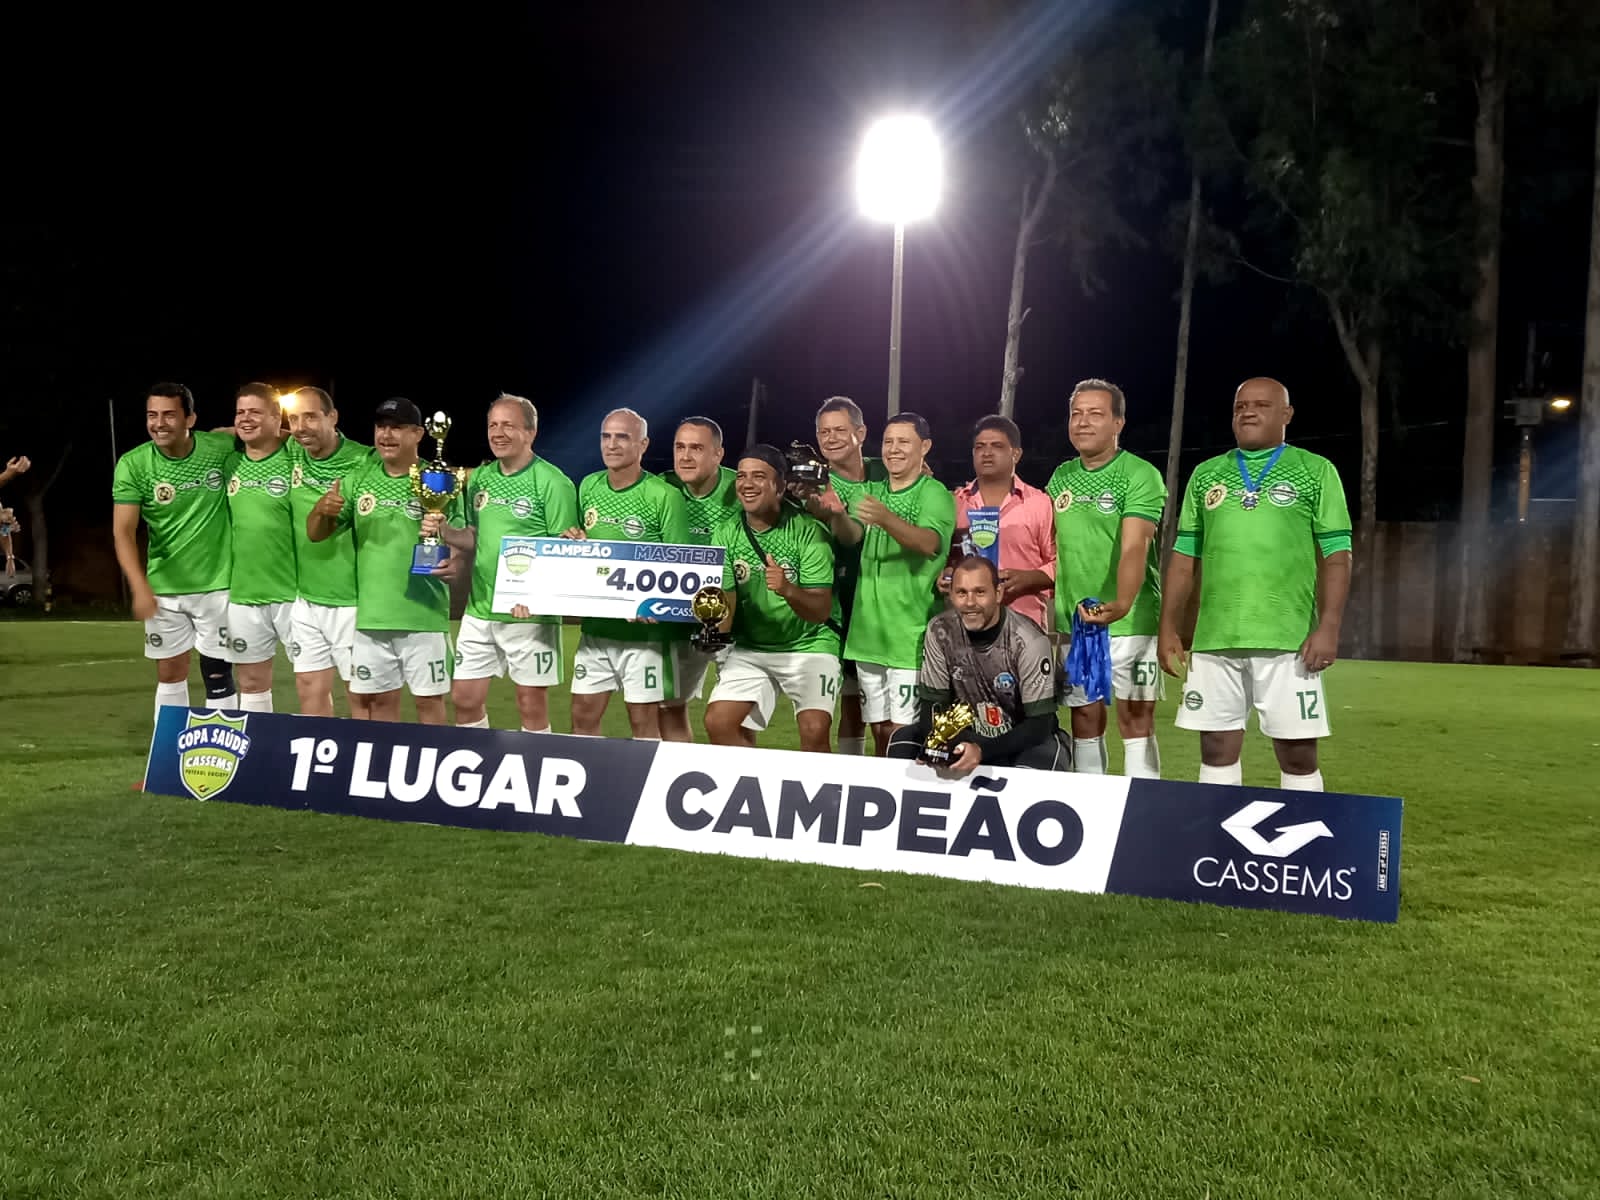 Aliança Galácticos Brilha nas Estrelas da 14a Copa Cassems: Campeões Invictos Unem Saúde, Habilidade e Amizade